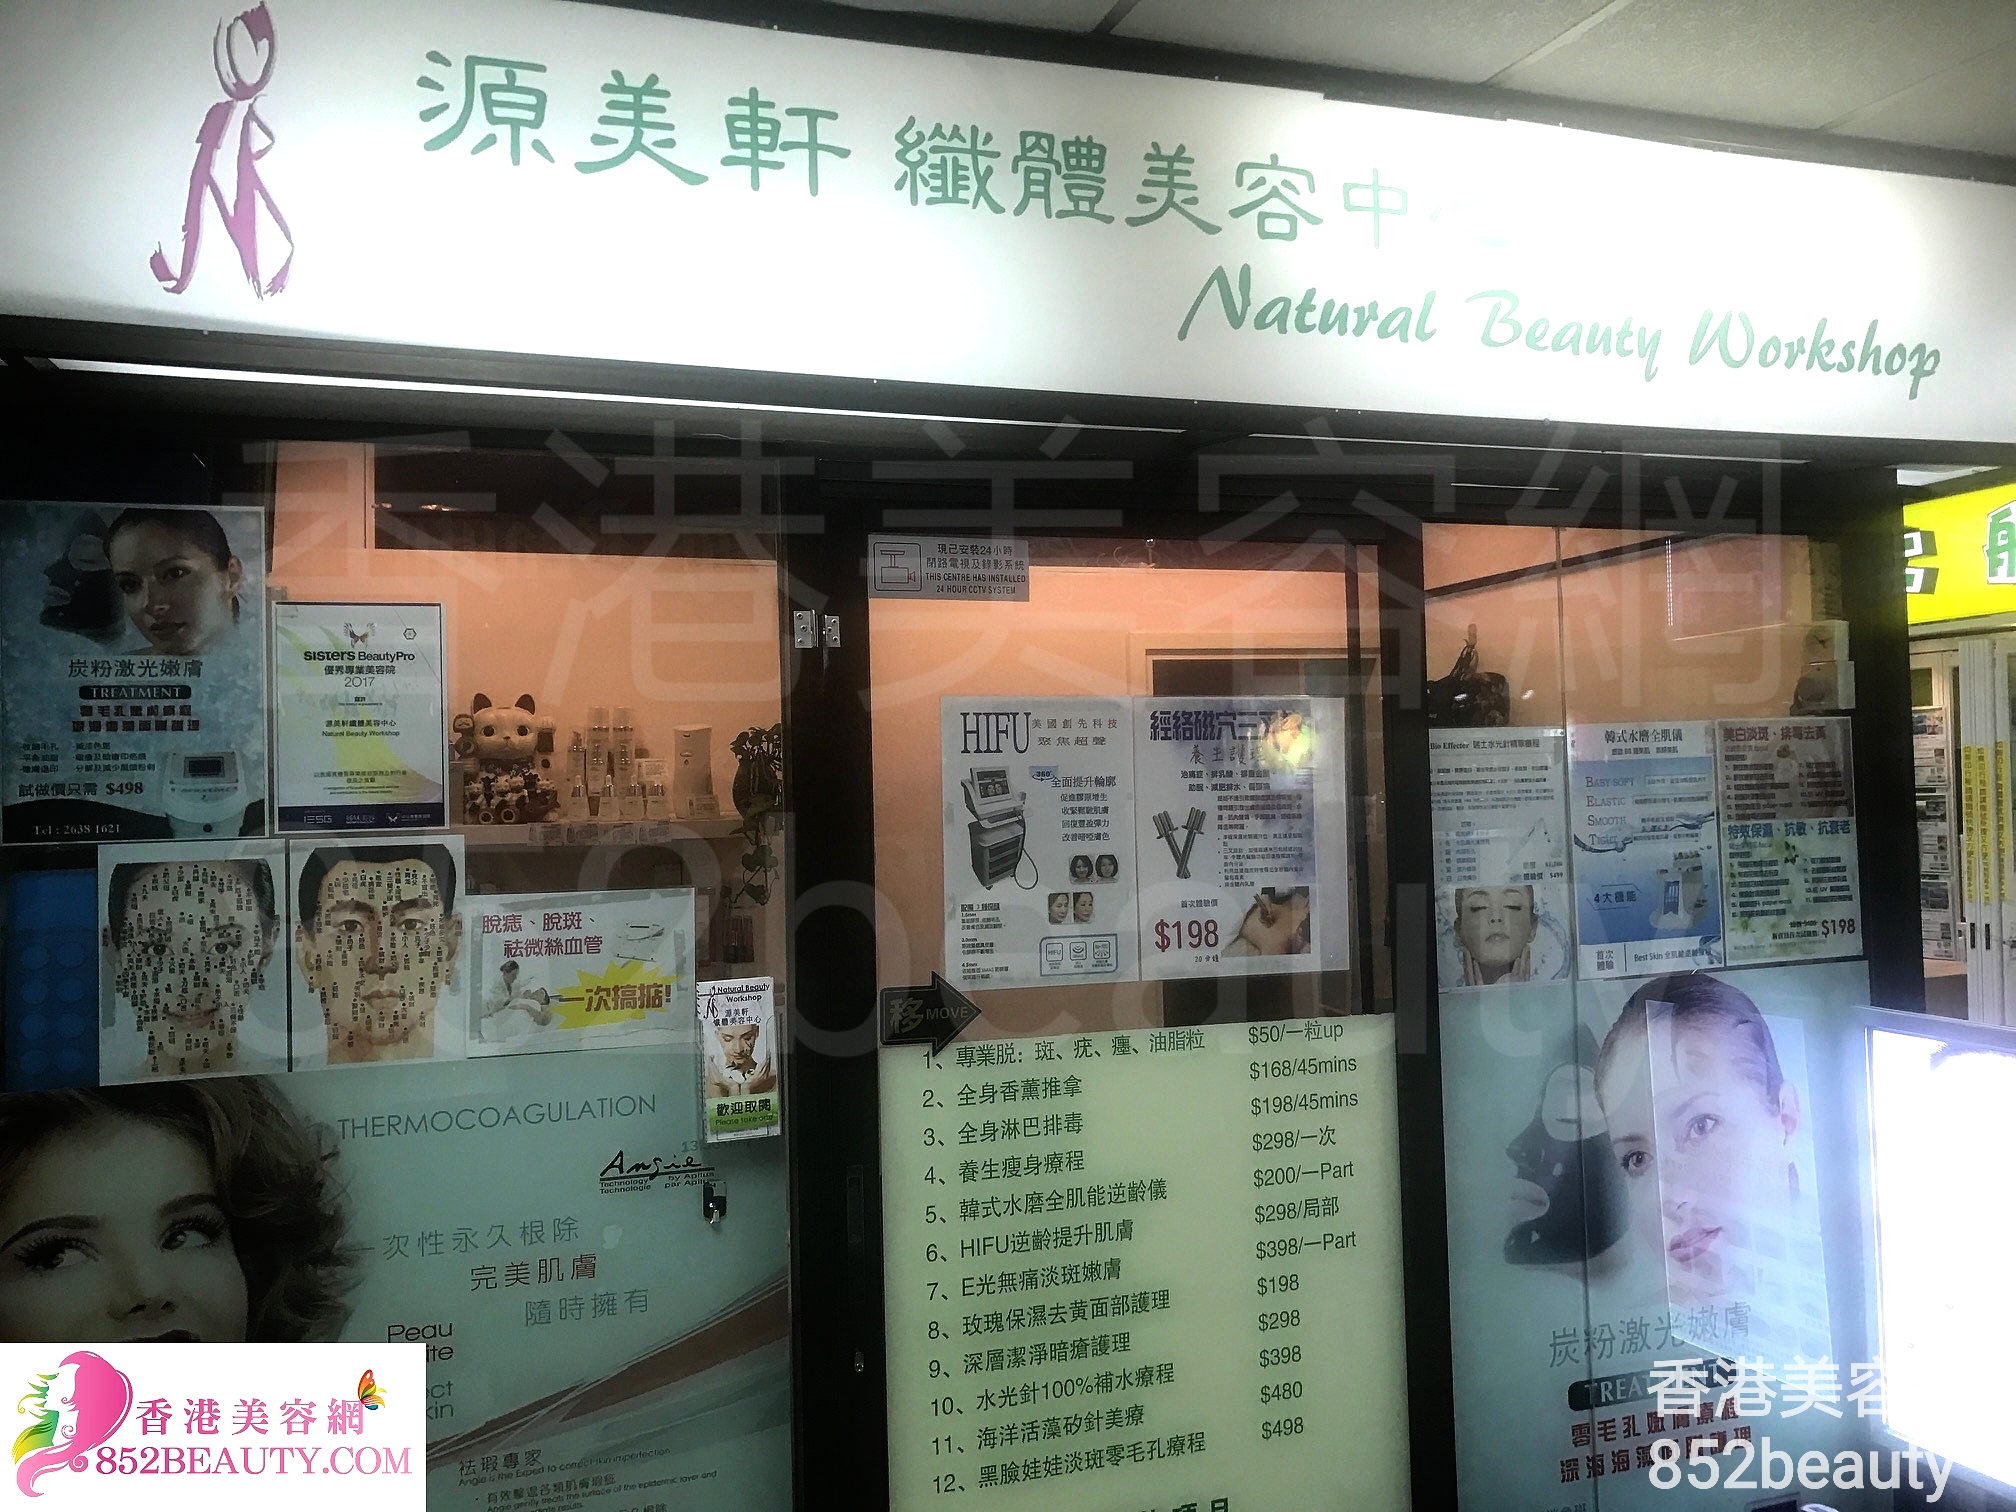 Massage/SPA: 源美軒纖體美容中心 Natural Beauty Workshop